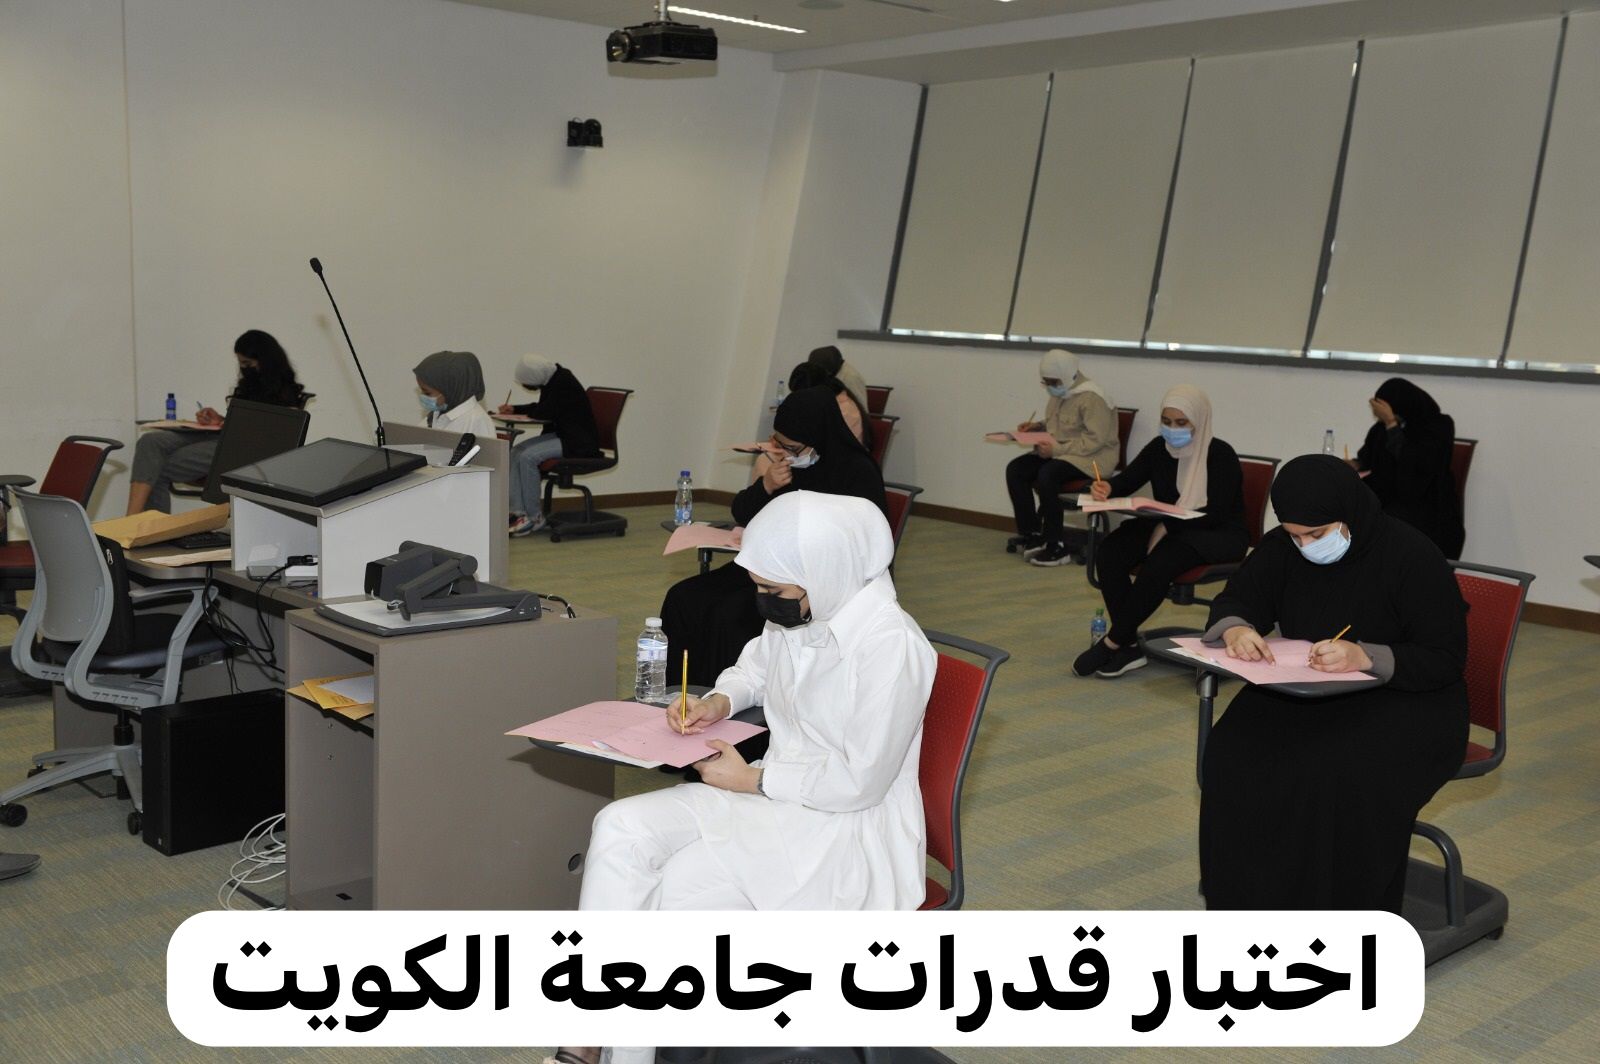 طريقة التسجيل لاختبار القدرات جامعة الكويت عبر رابط التسجيل portal.ku.edu.kw